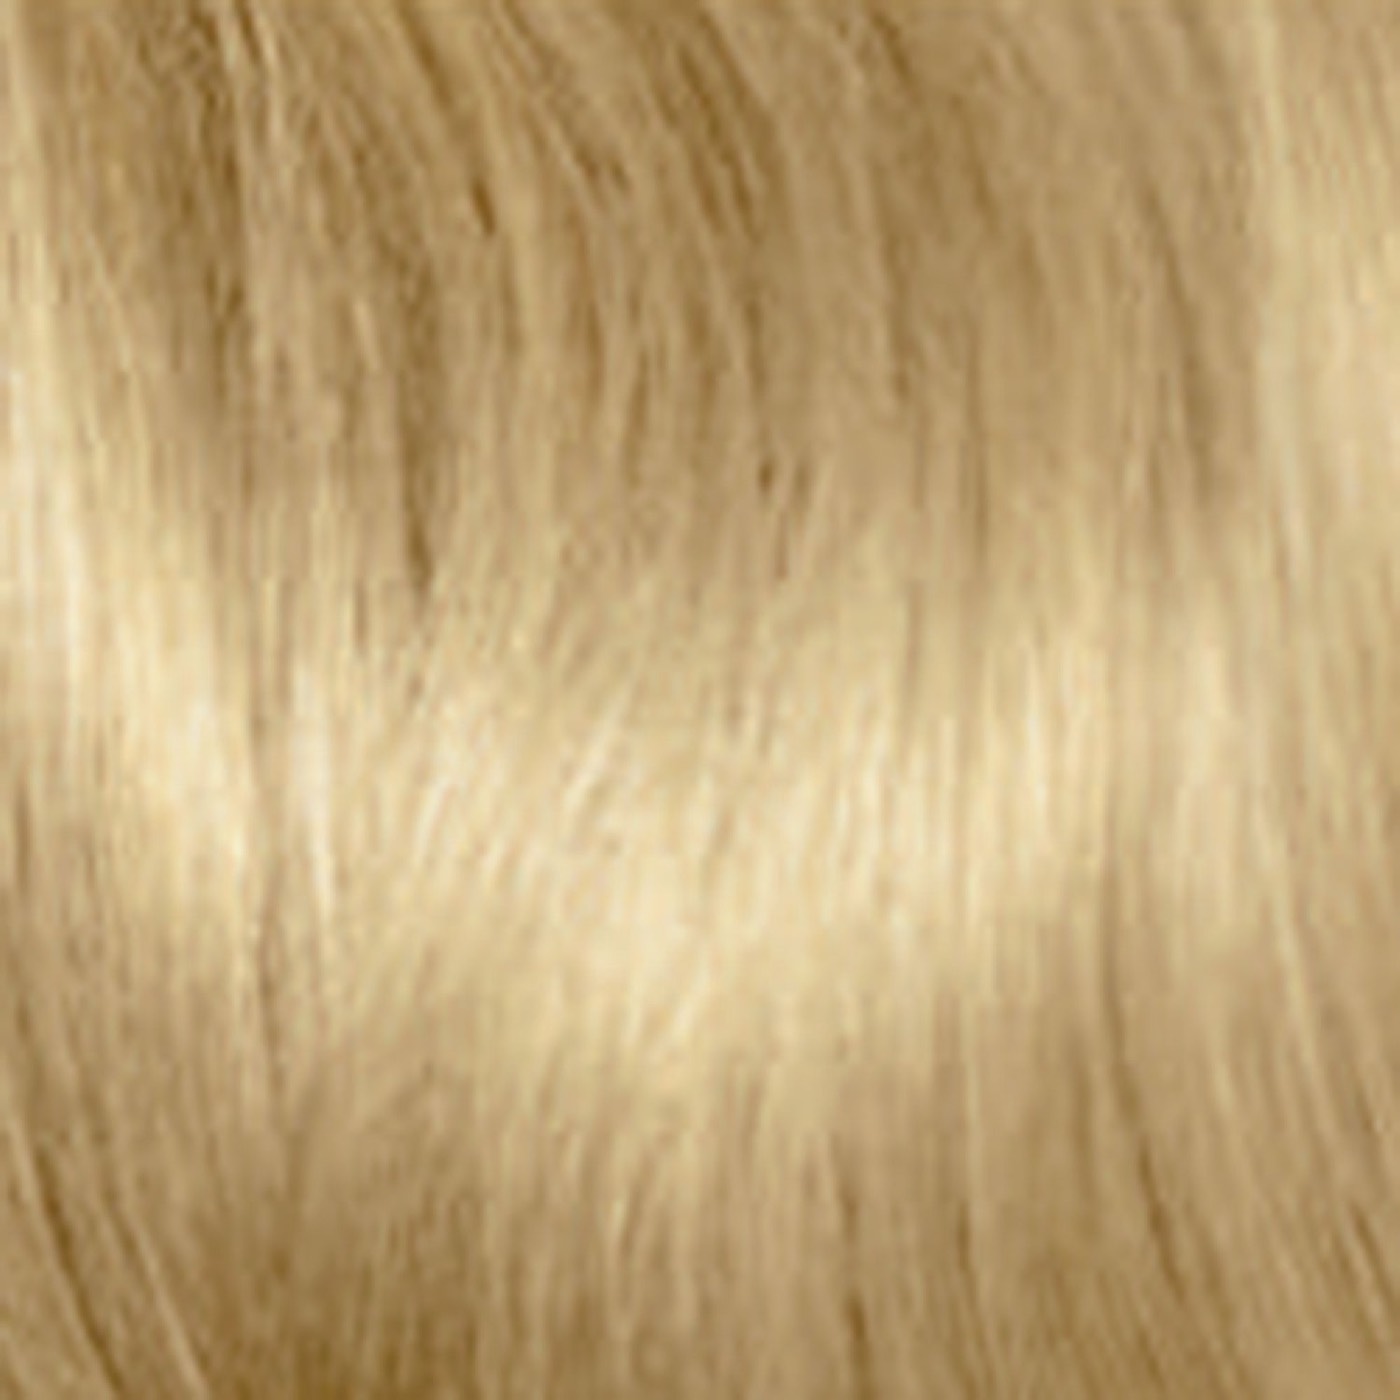 Какой Цвет Волос Онлайн По Фото